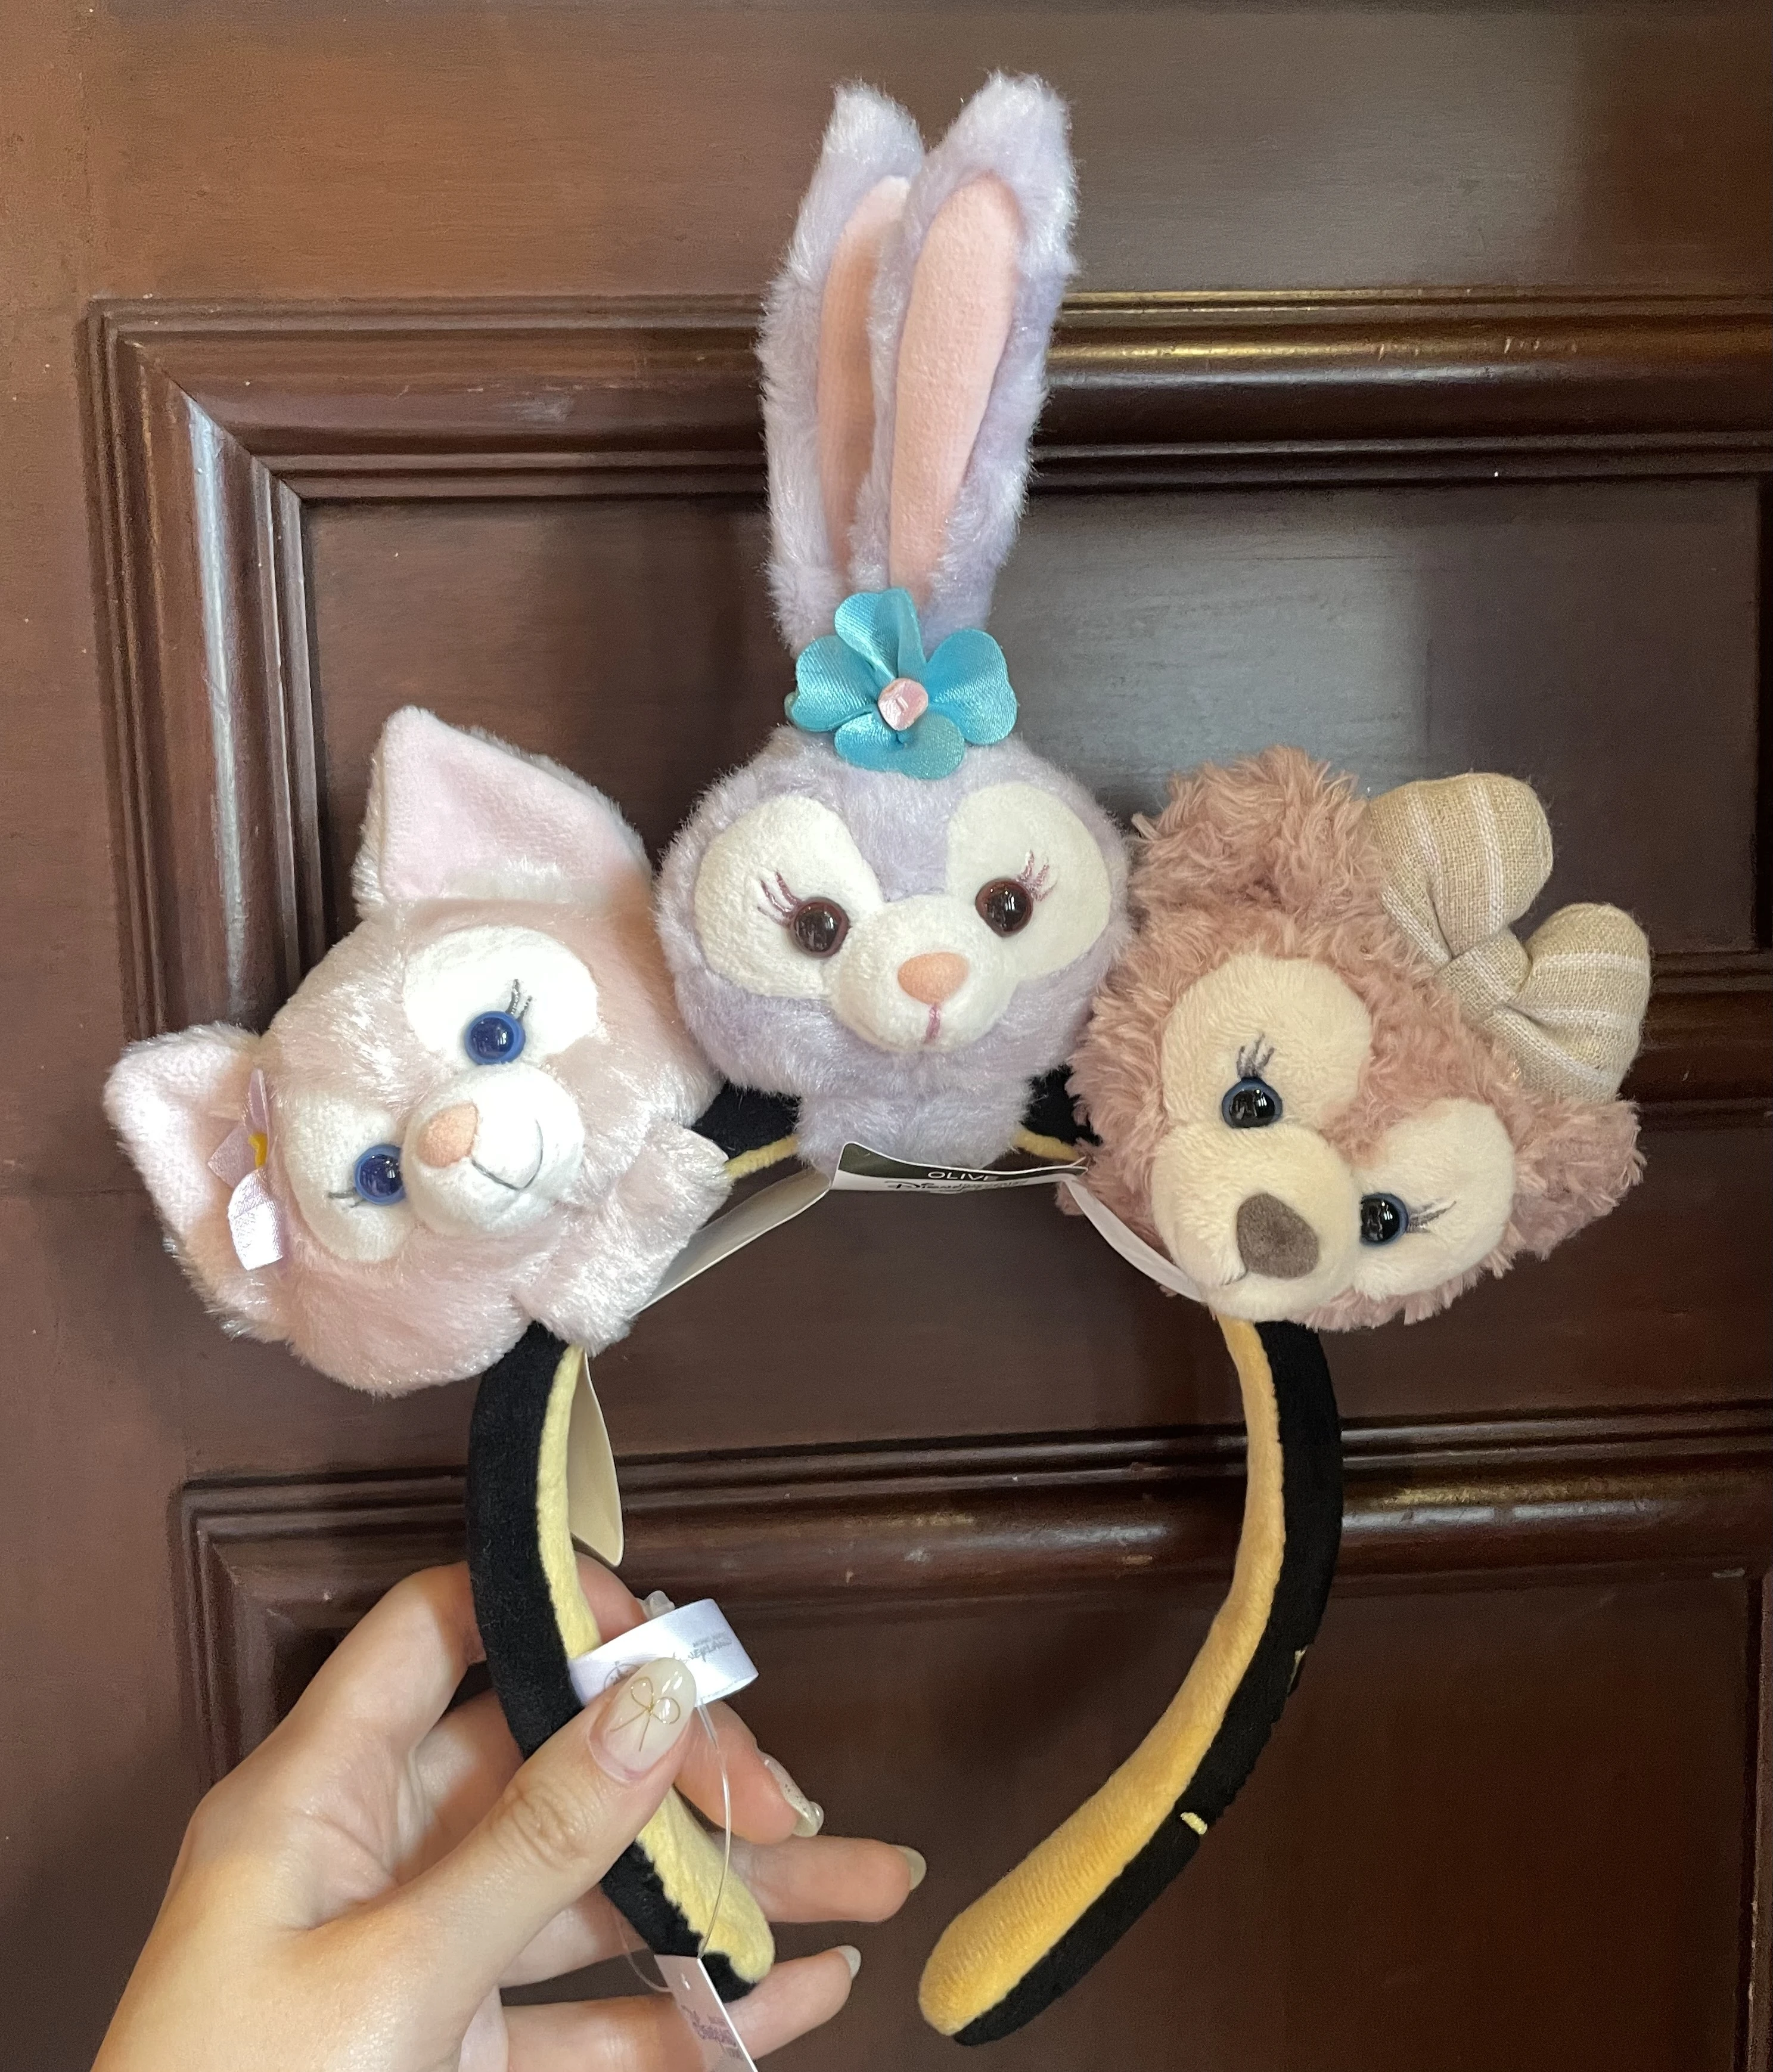 カチューシャ: Disney Personalized Headband（HK$ 70.00）、上部左: LinaBell Mini Plush Accessory（HK$ 109.00）、上部中央: StellaLou Mini Plush Accessory（HK$ 109.00）、上部右: ShellieMay Mini Plush Accessory（HK$ 109.00）